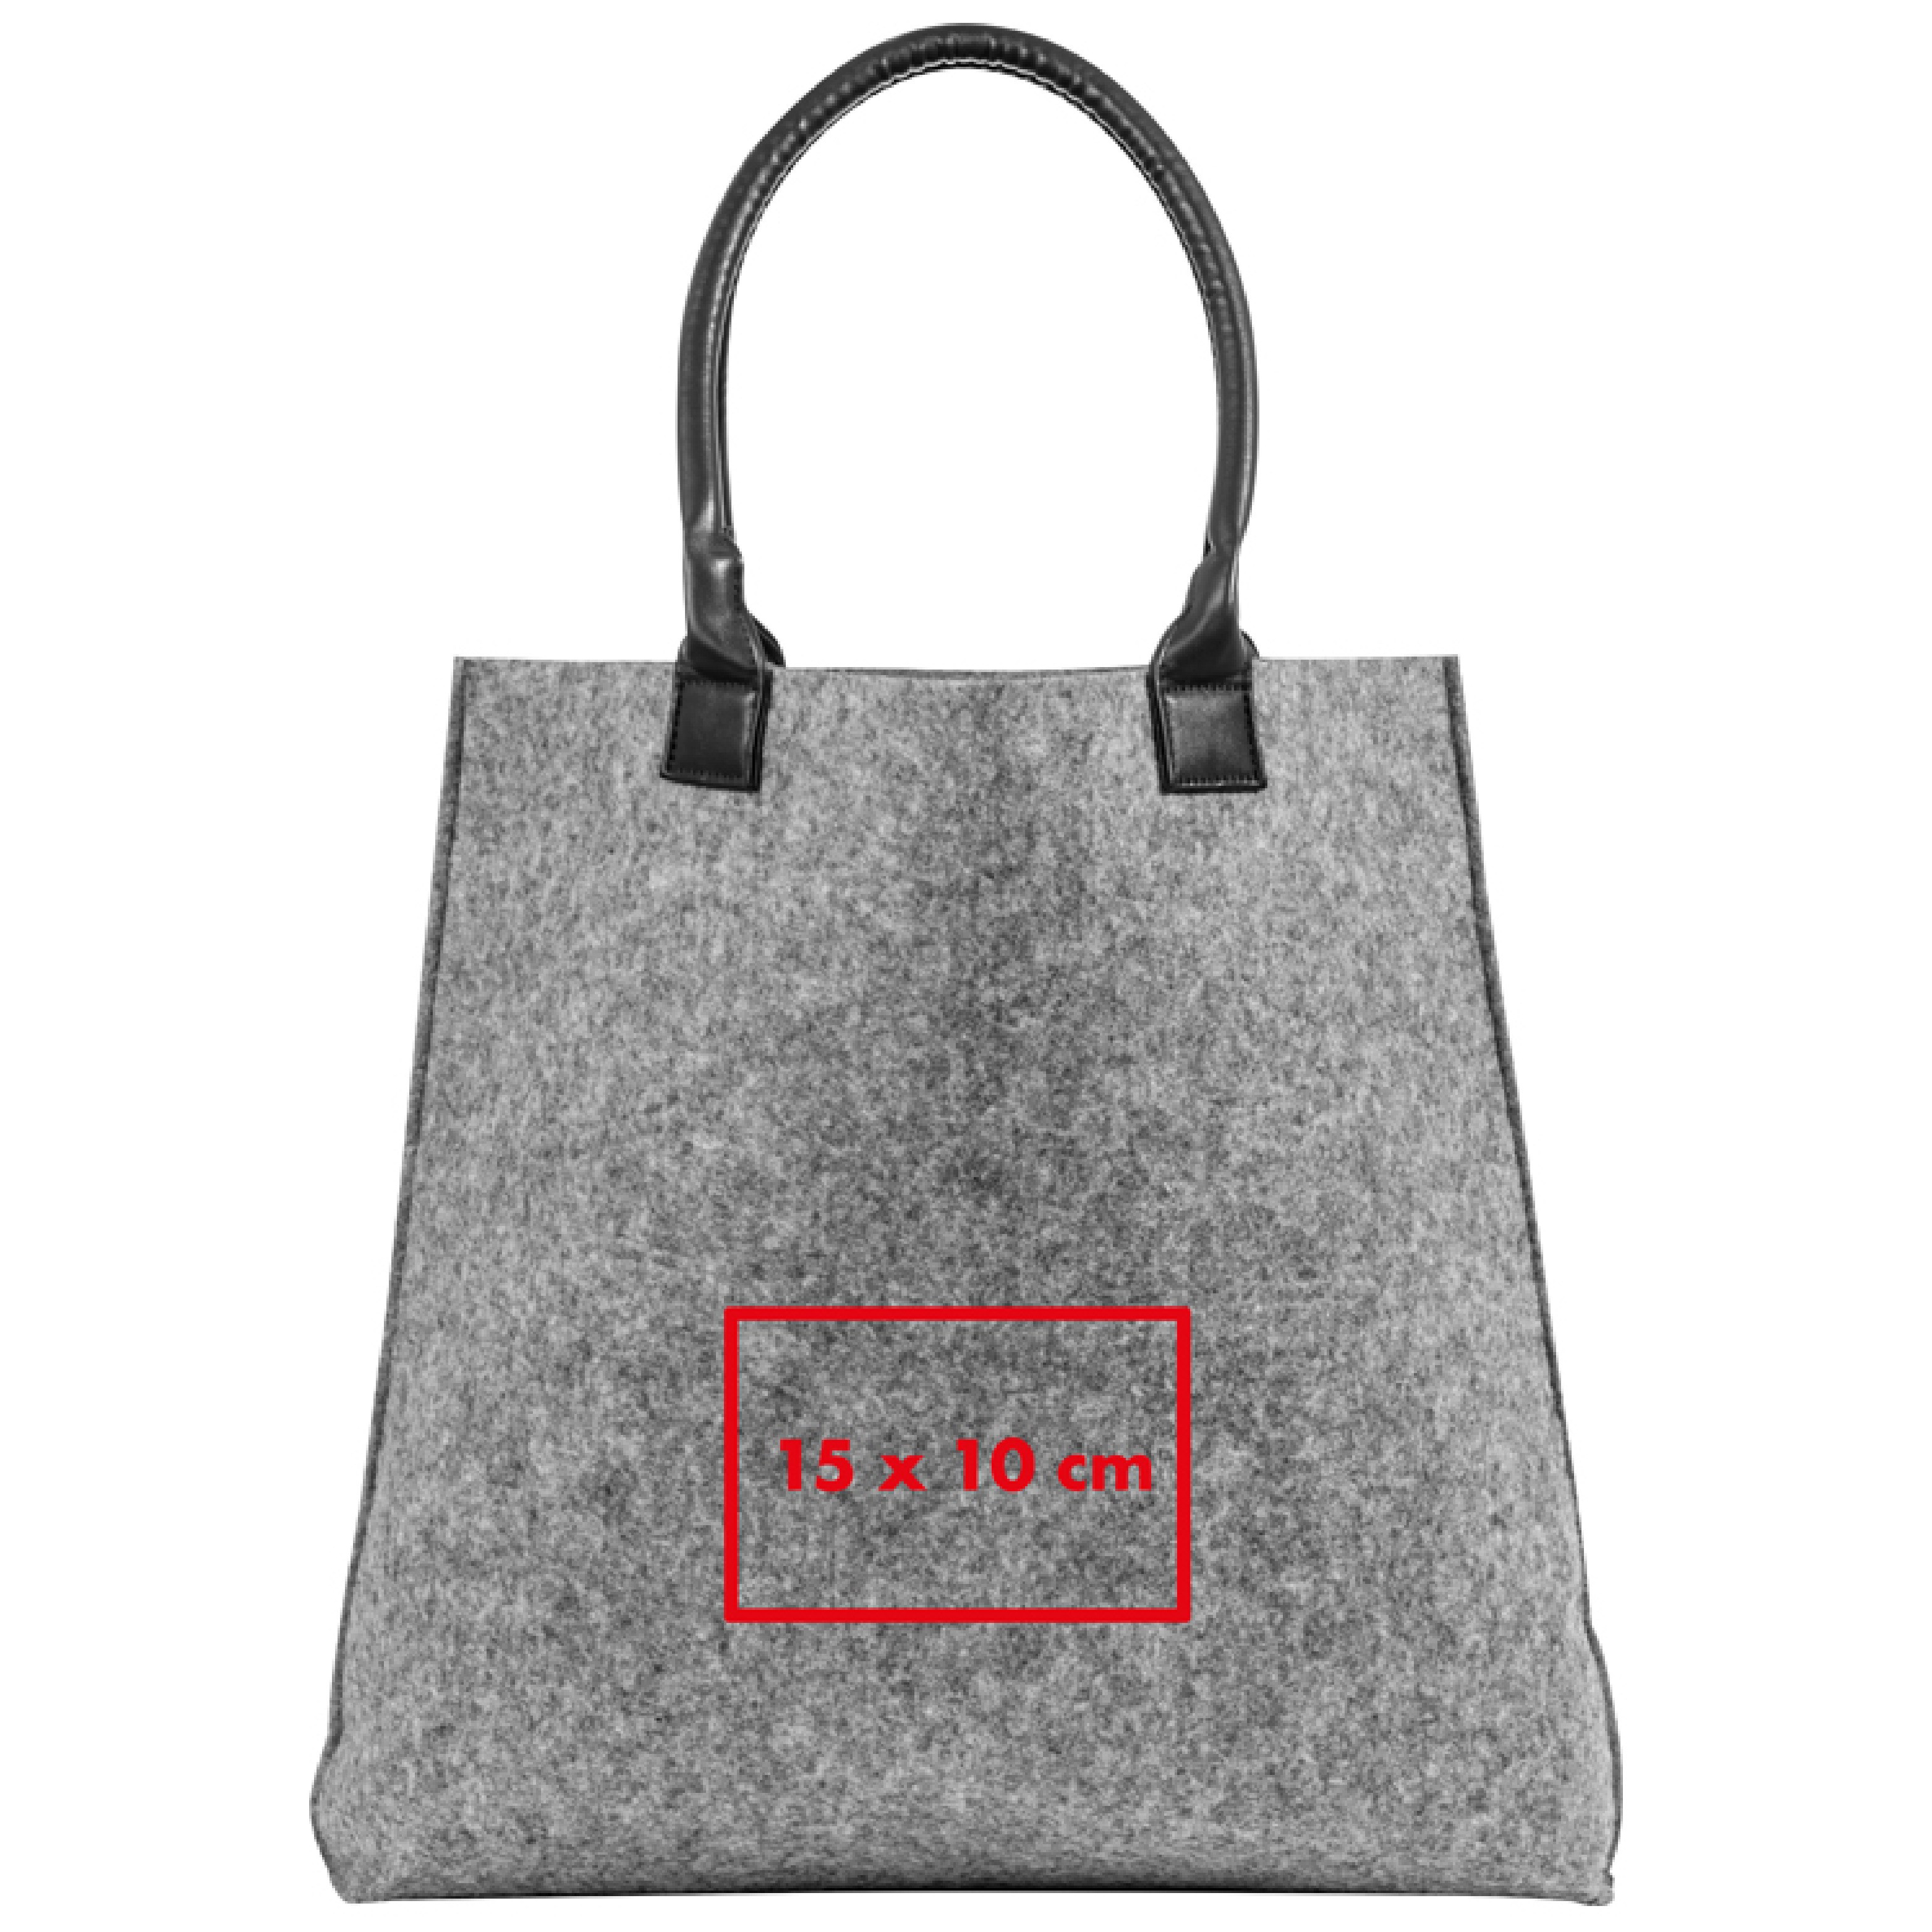 Einkaufstasche aus Filz bedruckt als Werbeartikel 855431294